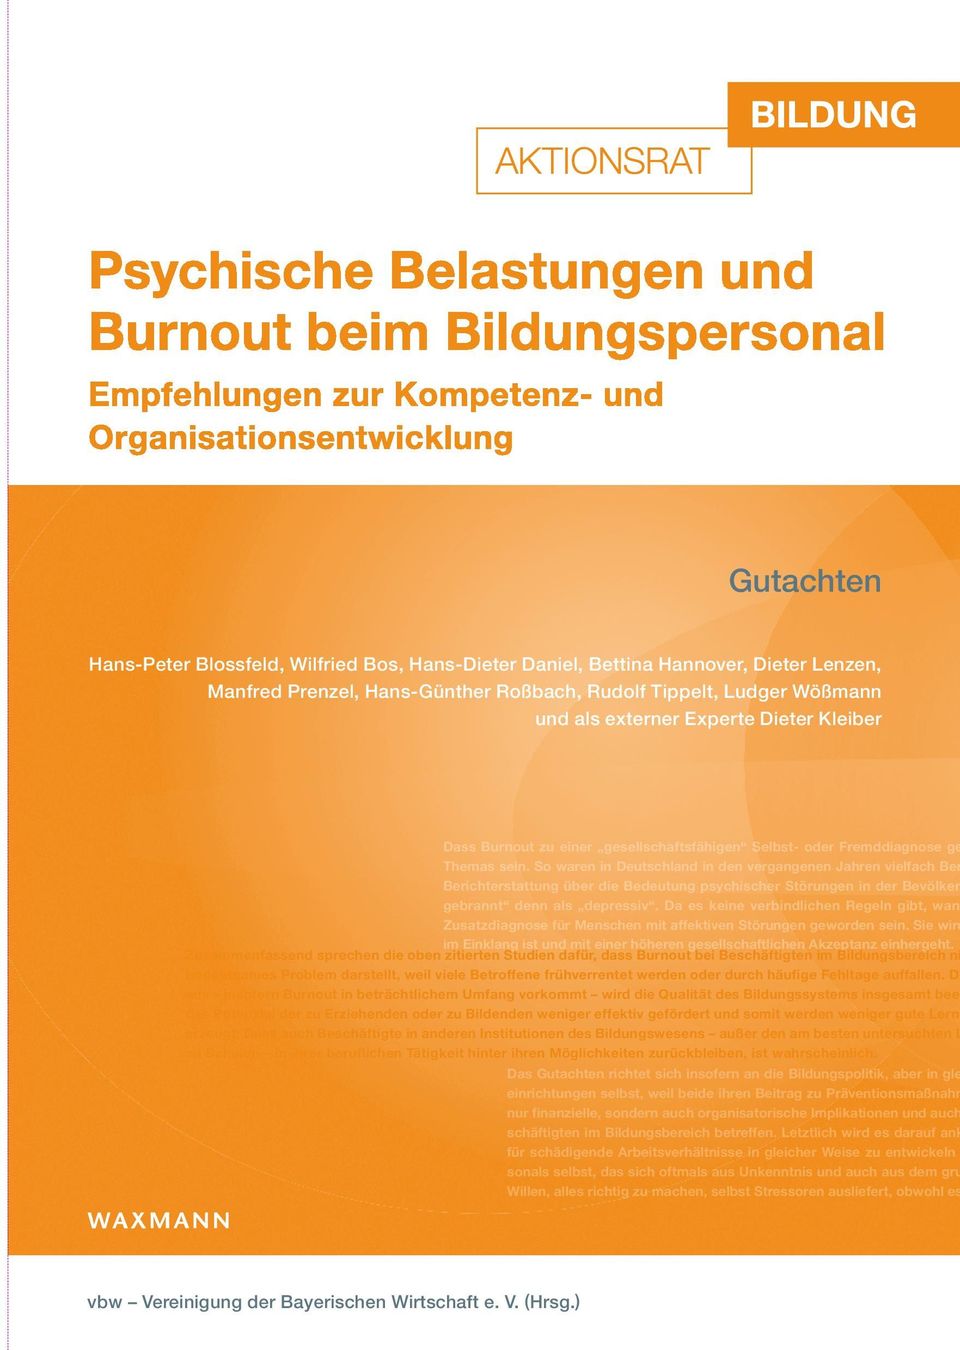 So waren in Deutschland in den vergangenen Jahren vielfach Ber Berichterstattung über die Bedeutung psychischer Störungen in der Bevölker gebrannt denn als depressiv.